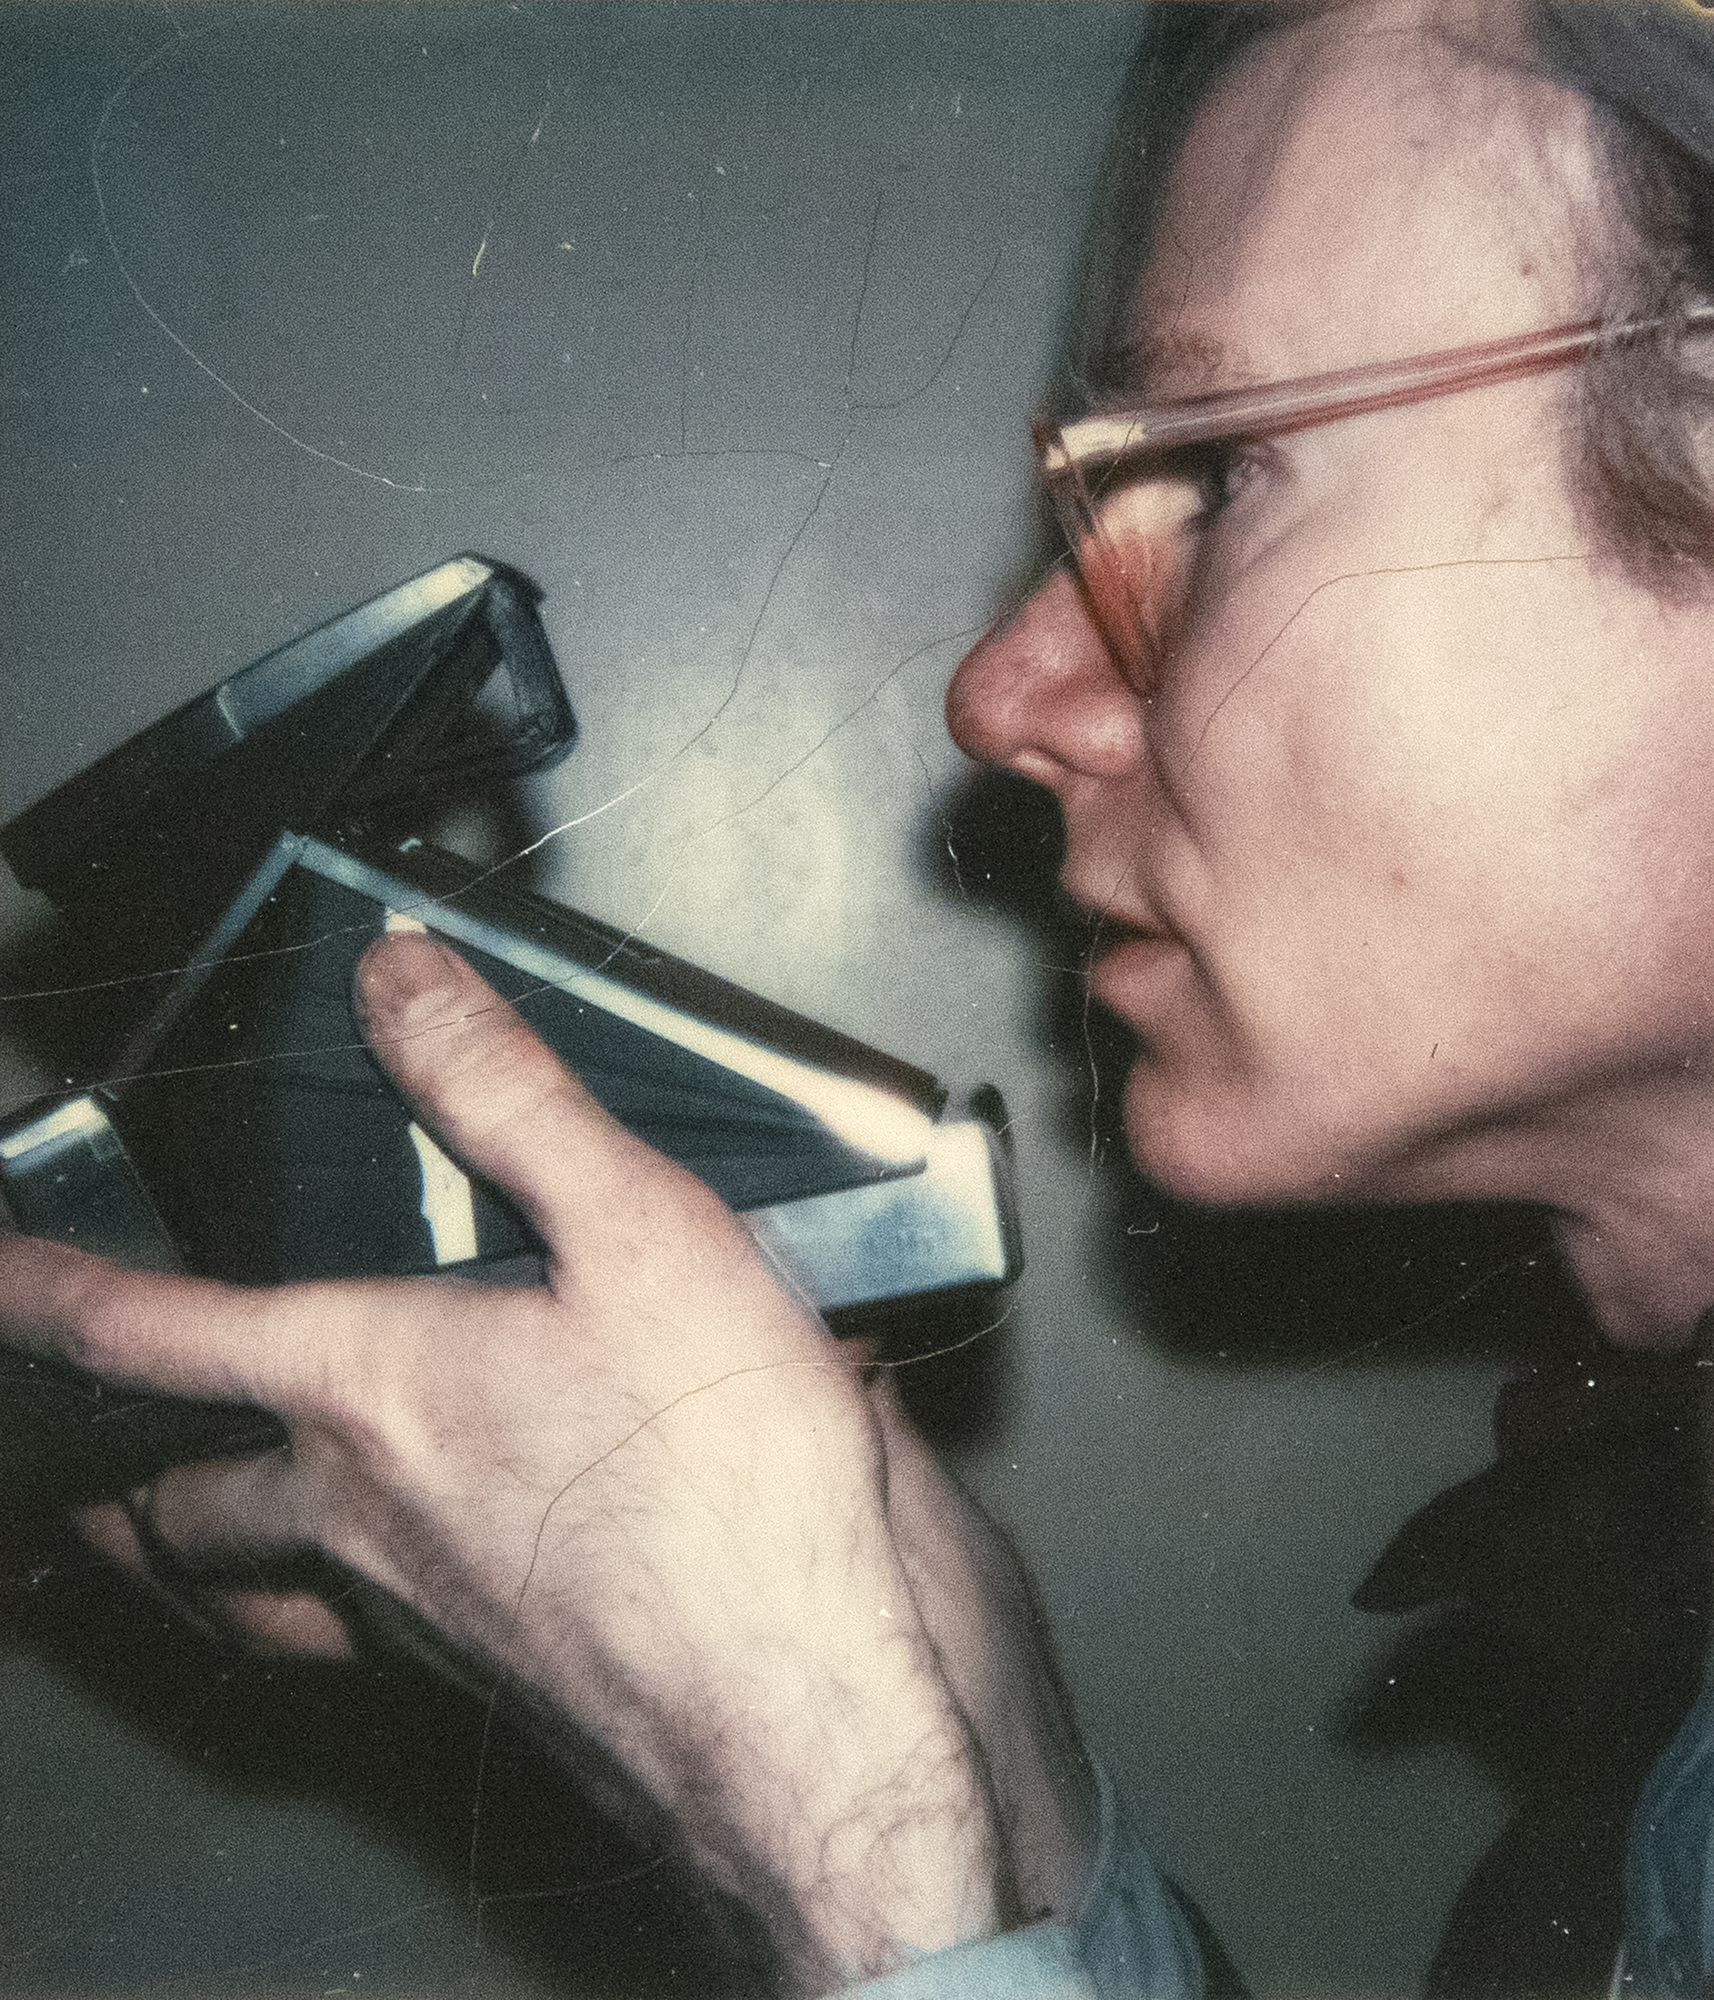 Andy Warhol a porté un appareil photo Polaroid comme chroniqueur implacable de la vie et de ses rencontres de la fin des années 1950 jusqu&#039;à sa mort en 1987. La vaste collection de polaroïds qu&#039;il a amassée est spontanée, non polie, souvent brute, et sert de chronique de son époque, de la même manière qu&#039;Instagram reflète notre époque actuelle. Une autre personne aurait pu prendre cet autoportrait, créant ainsi une proposition à peine voilée demandant au spectateur de l&#039;accepter comme un autoportrait, ou peut-être a-t-il été réalisé uniquement par Warhol à l&#039;aide d&#039;un accessoire externe de retardateur. Il s&#039;agit d&#039;un portrait qui célèbre l&#039;appareil sur lequel la vie de Warhol a essentiellement tourné, un hommage soigneusement mis en scène à sa relation avec l&#039;appareil photo Polaroid.